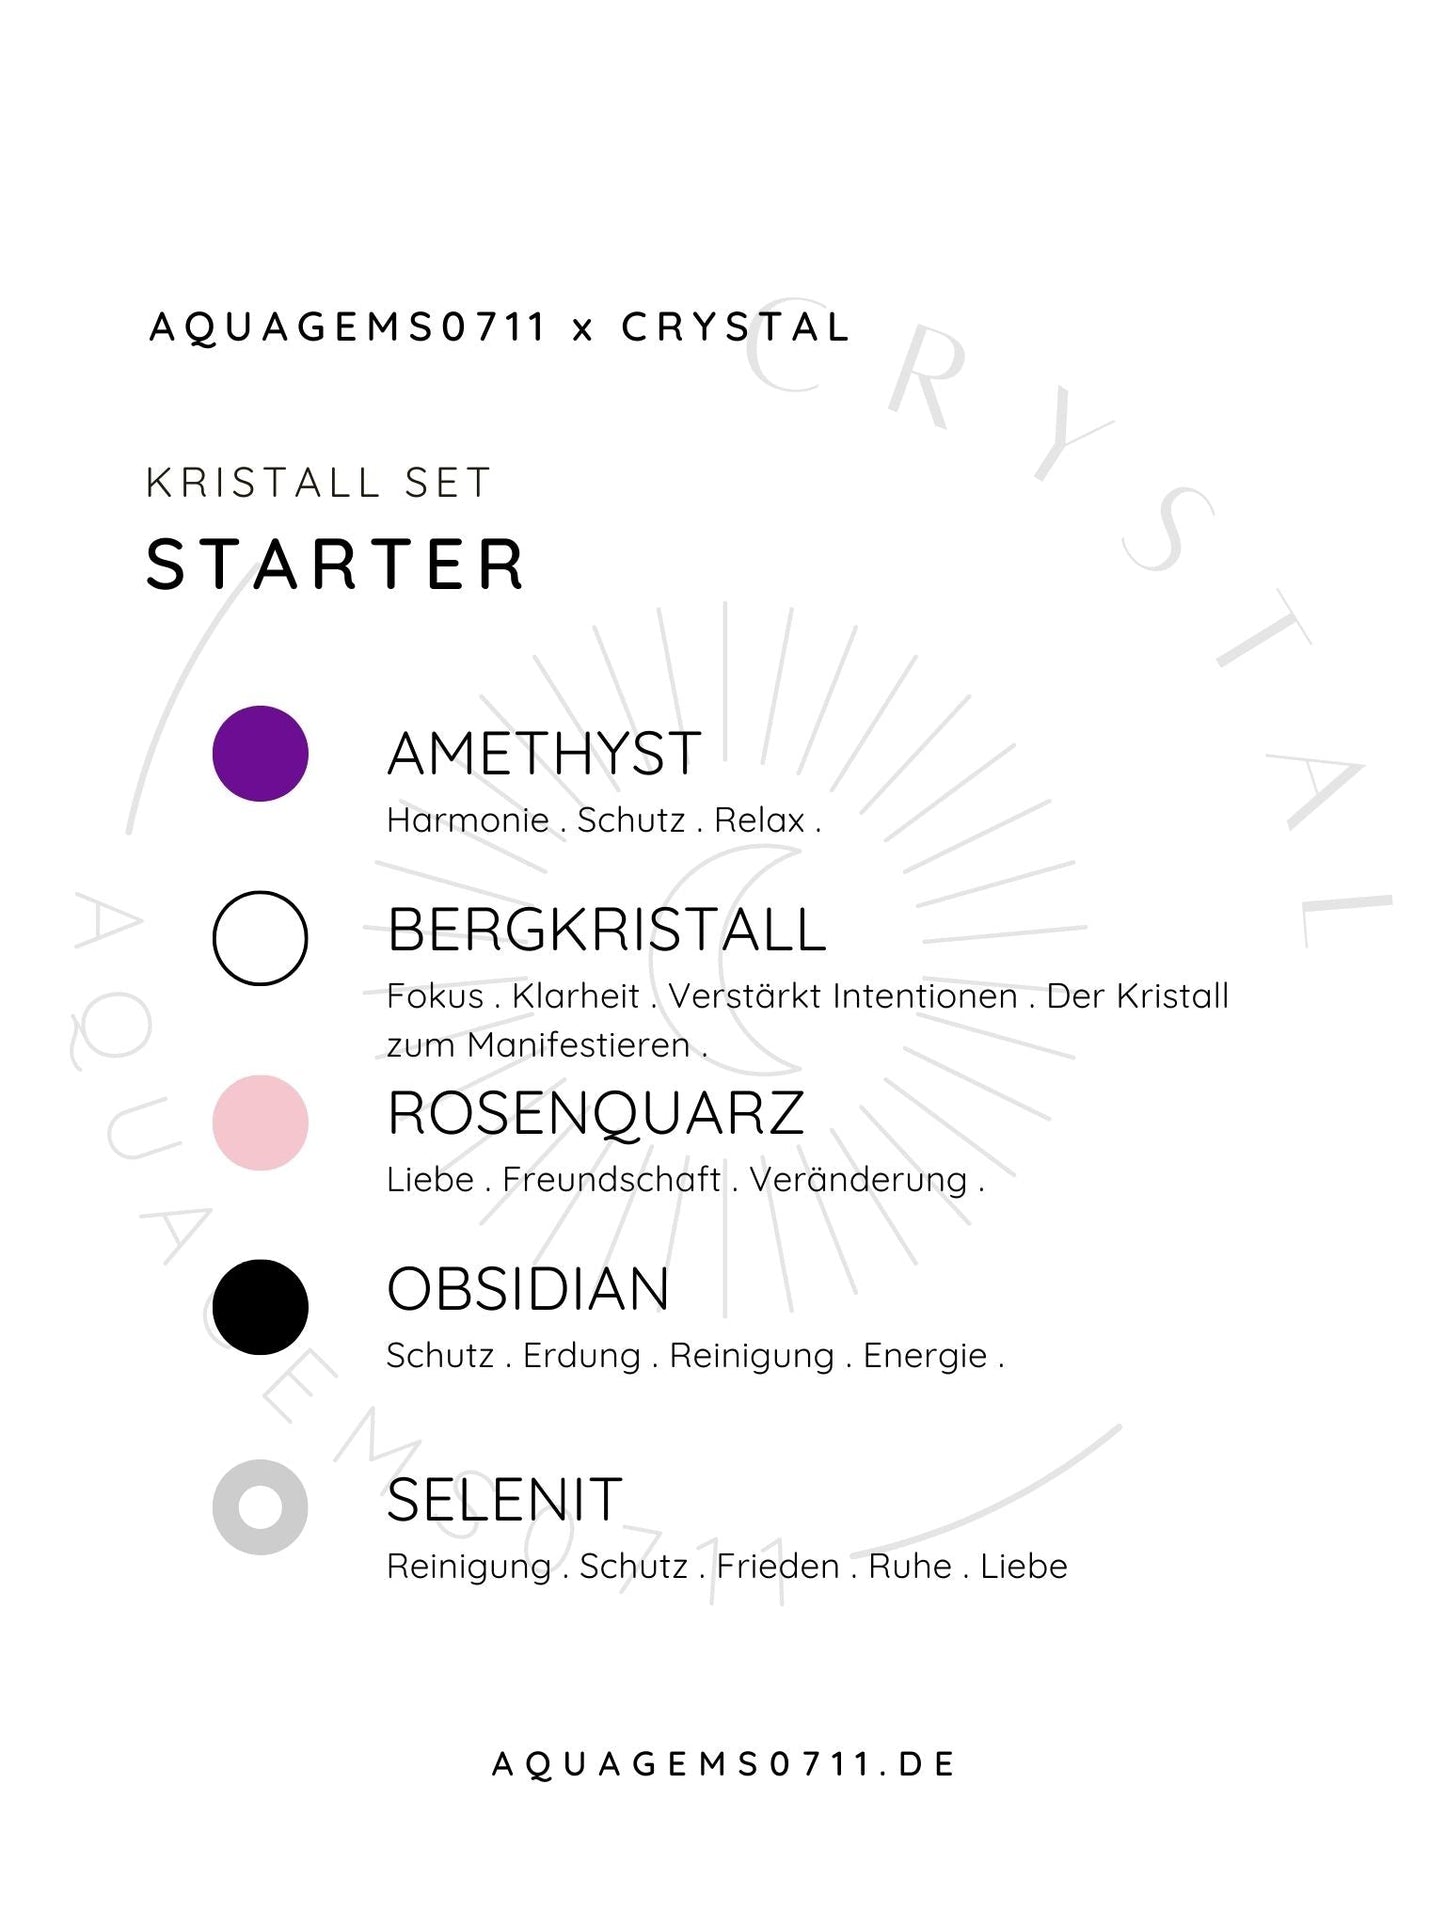 Kristall Set Beginner . CRYSTAL KIT STARTER . Amethyst . Bergkristall . Rosenquarz . Obsidian . Selenit